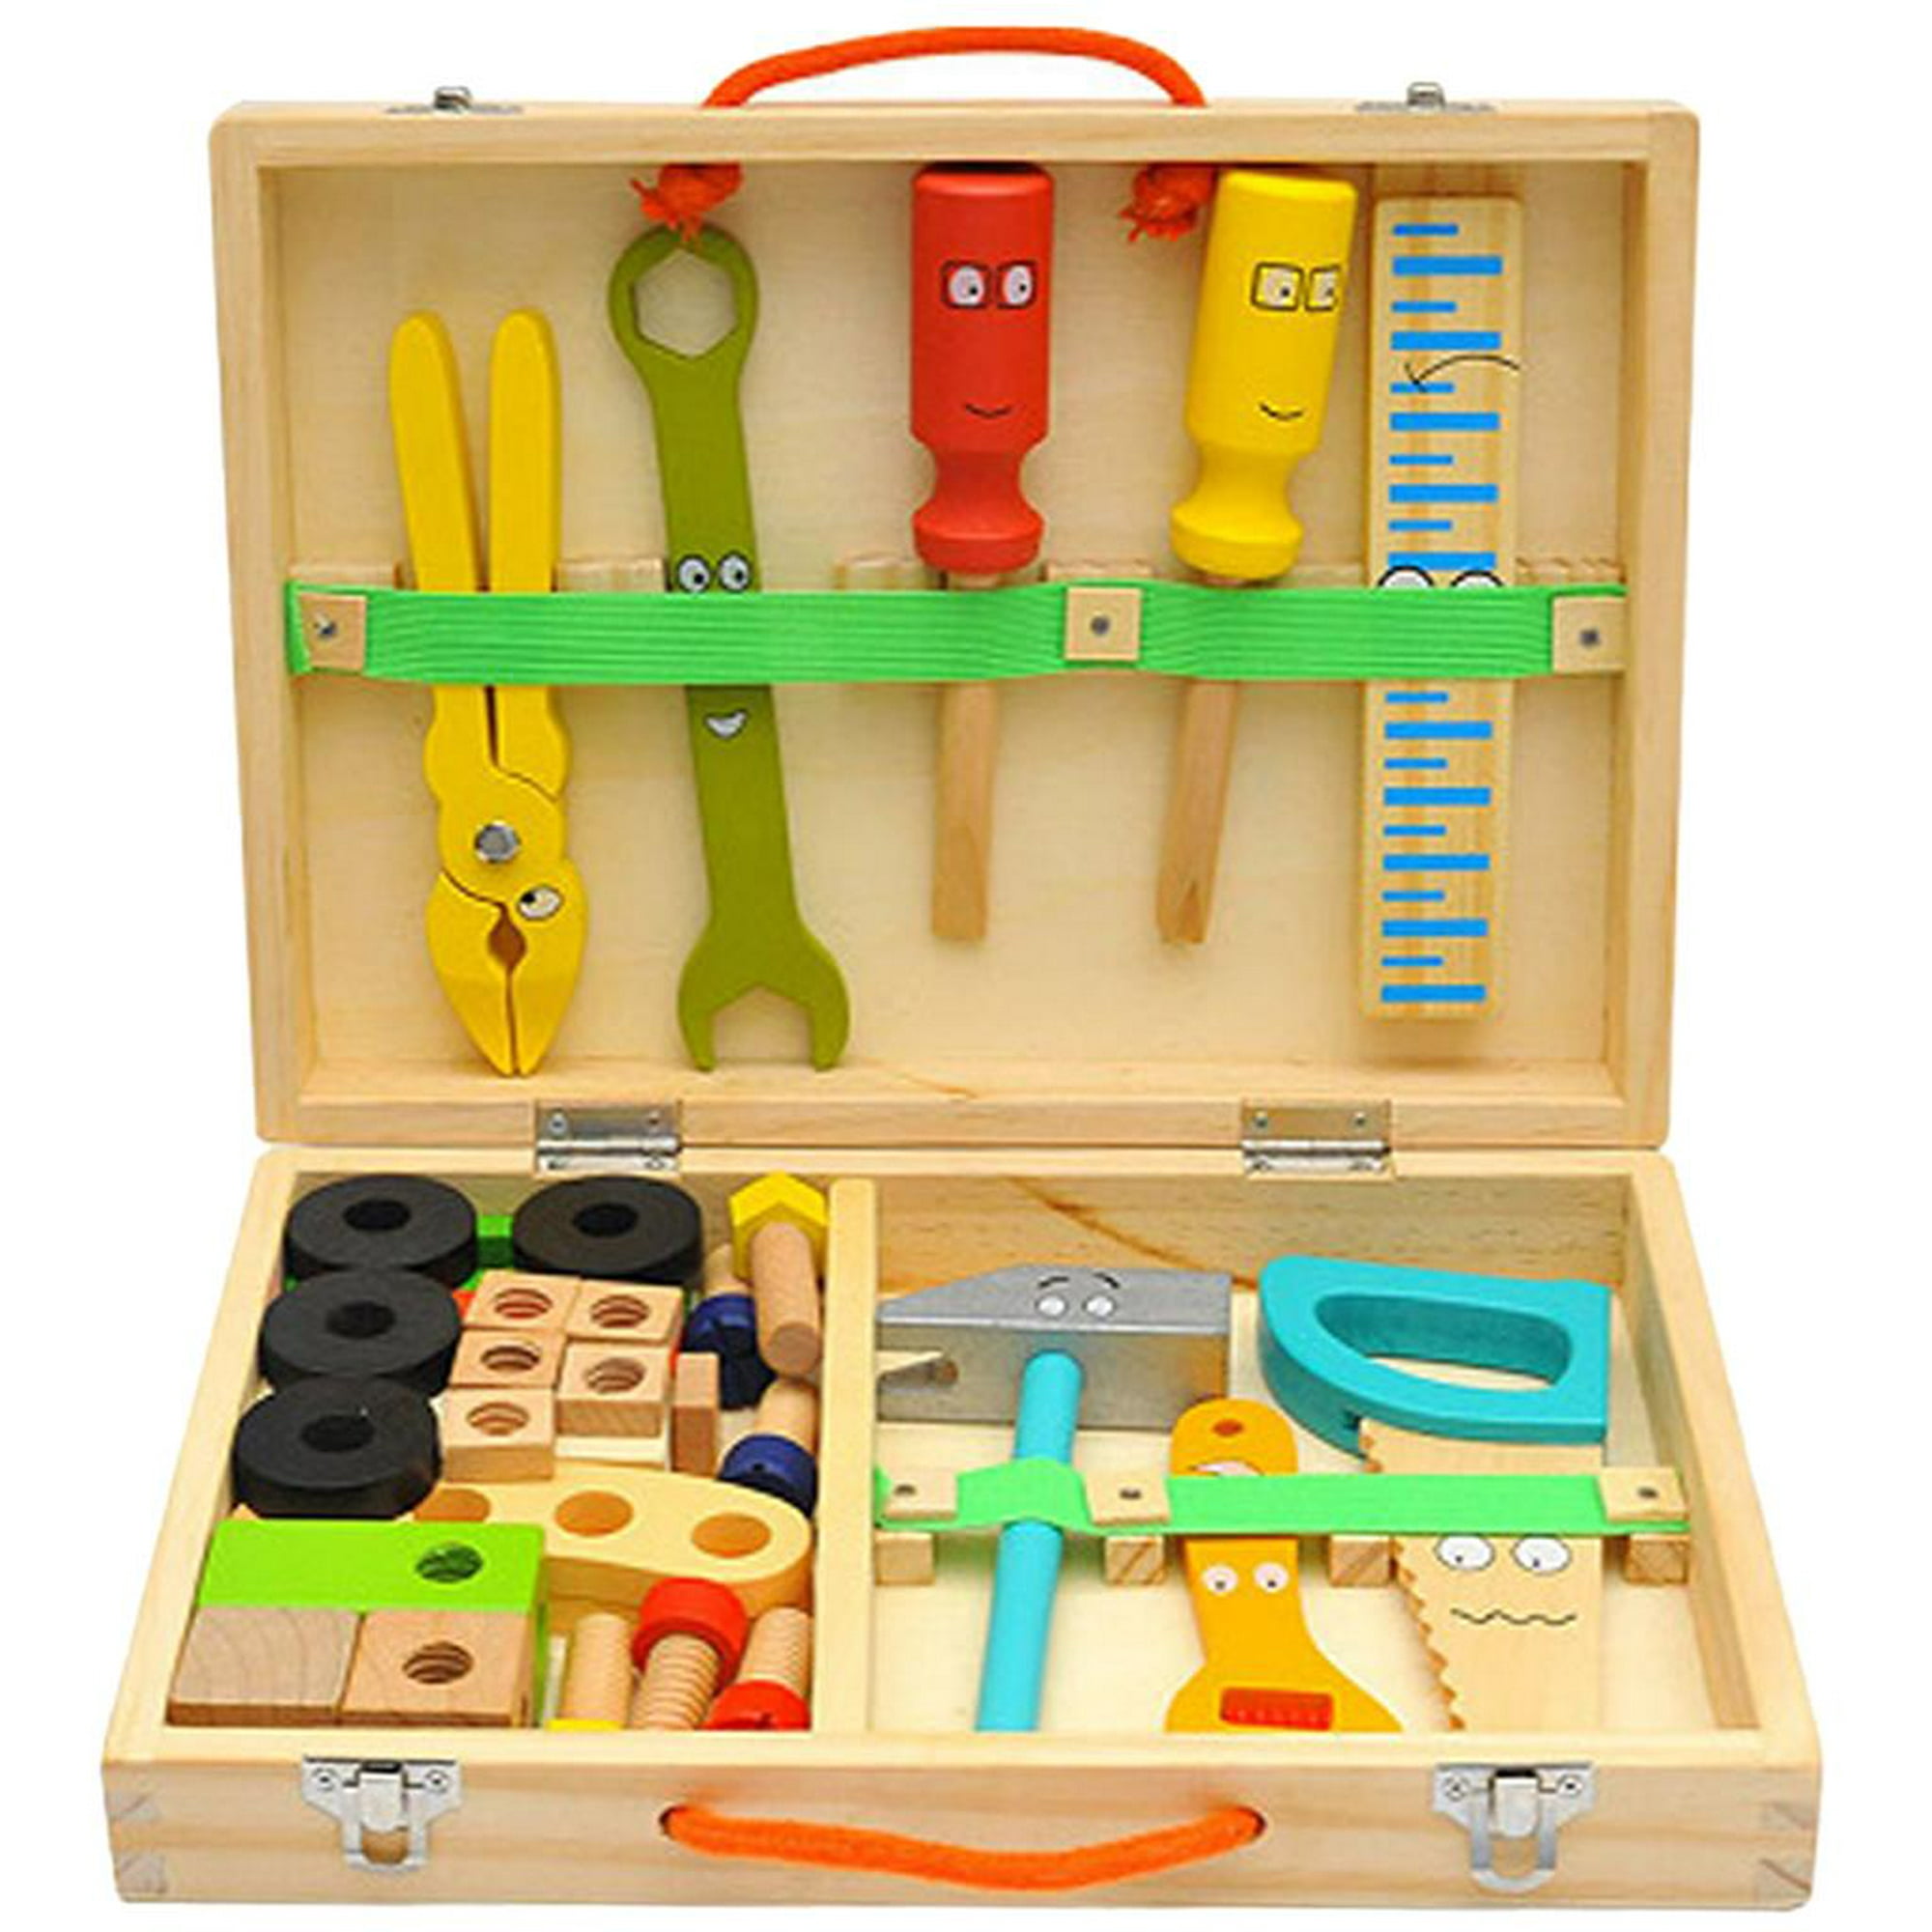 Juego de herramientas de madera para niños, kit de herramientas para niños  con caja de herramientas de madera, juguete educativo STEM de construcción